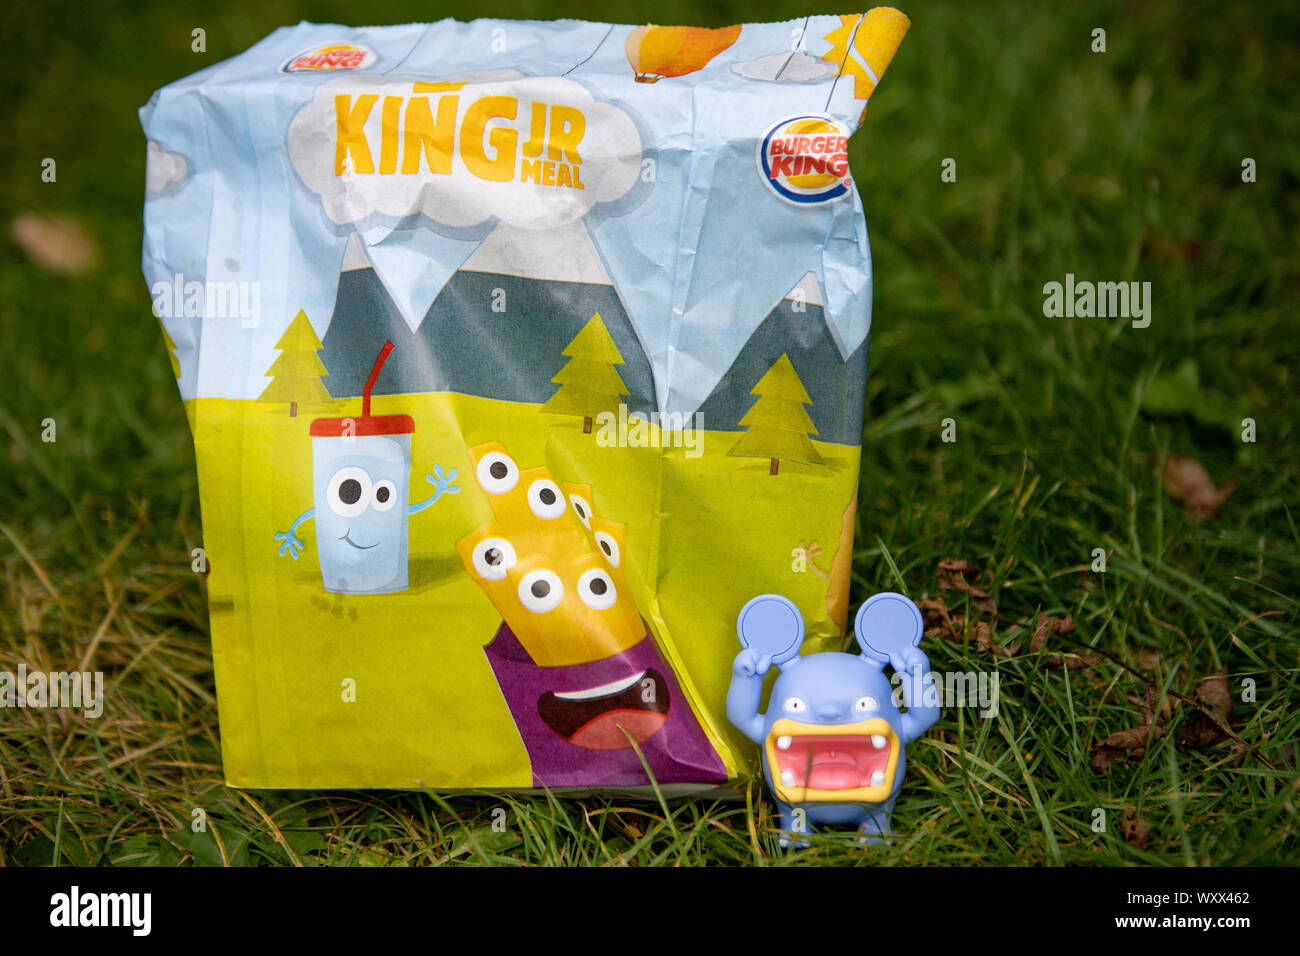 Burger king spielzeug -Fotos und -Bildmaterial in hoher Auflösung – Alamy